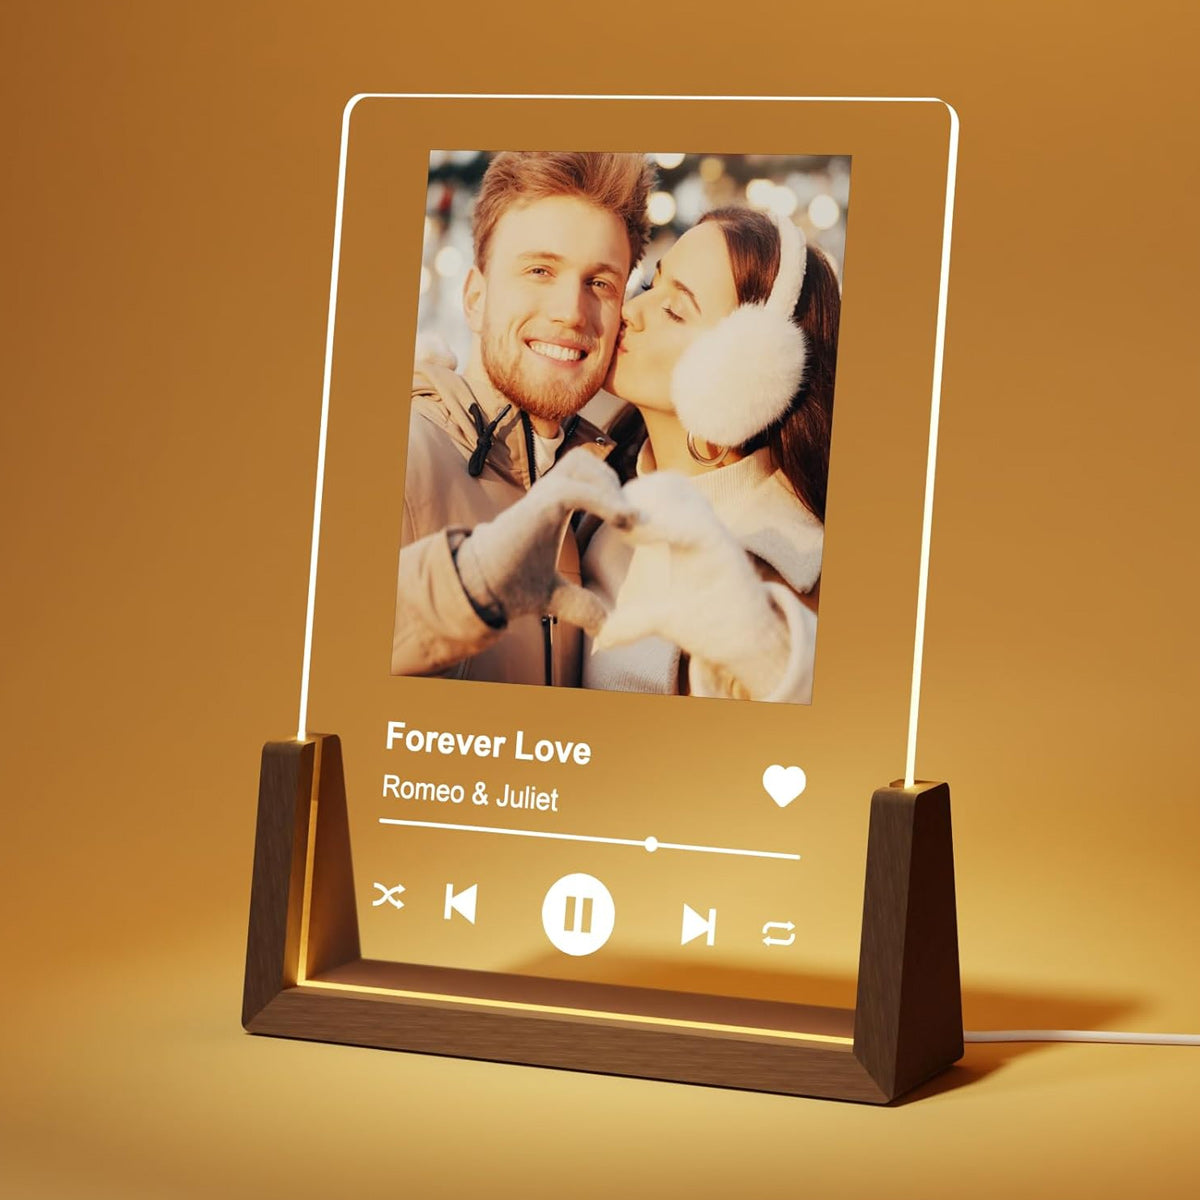 Luce notturna personalizzata NEONIP con placca acrilica Spotify, regali personalizzati con foto per il fidanzato